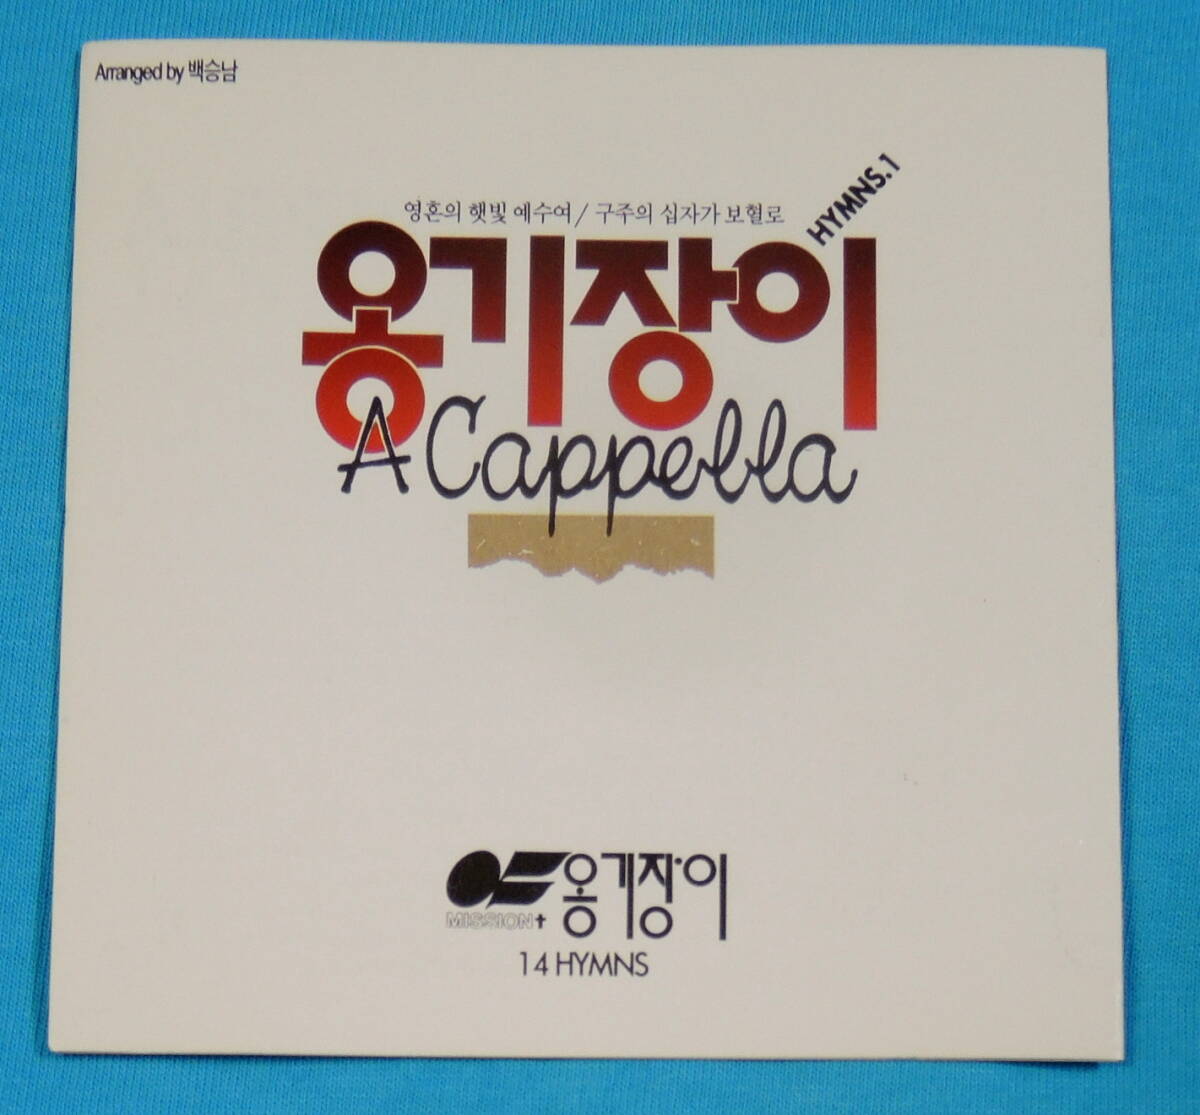 [ Корея запись ] on gi Jean i|a Capella . прекрасный . no. 1 сборник,A CAPPELLA HYMNS VOL.1